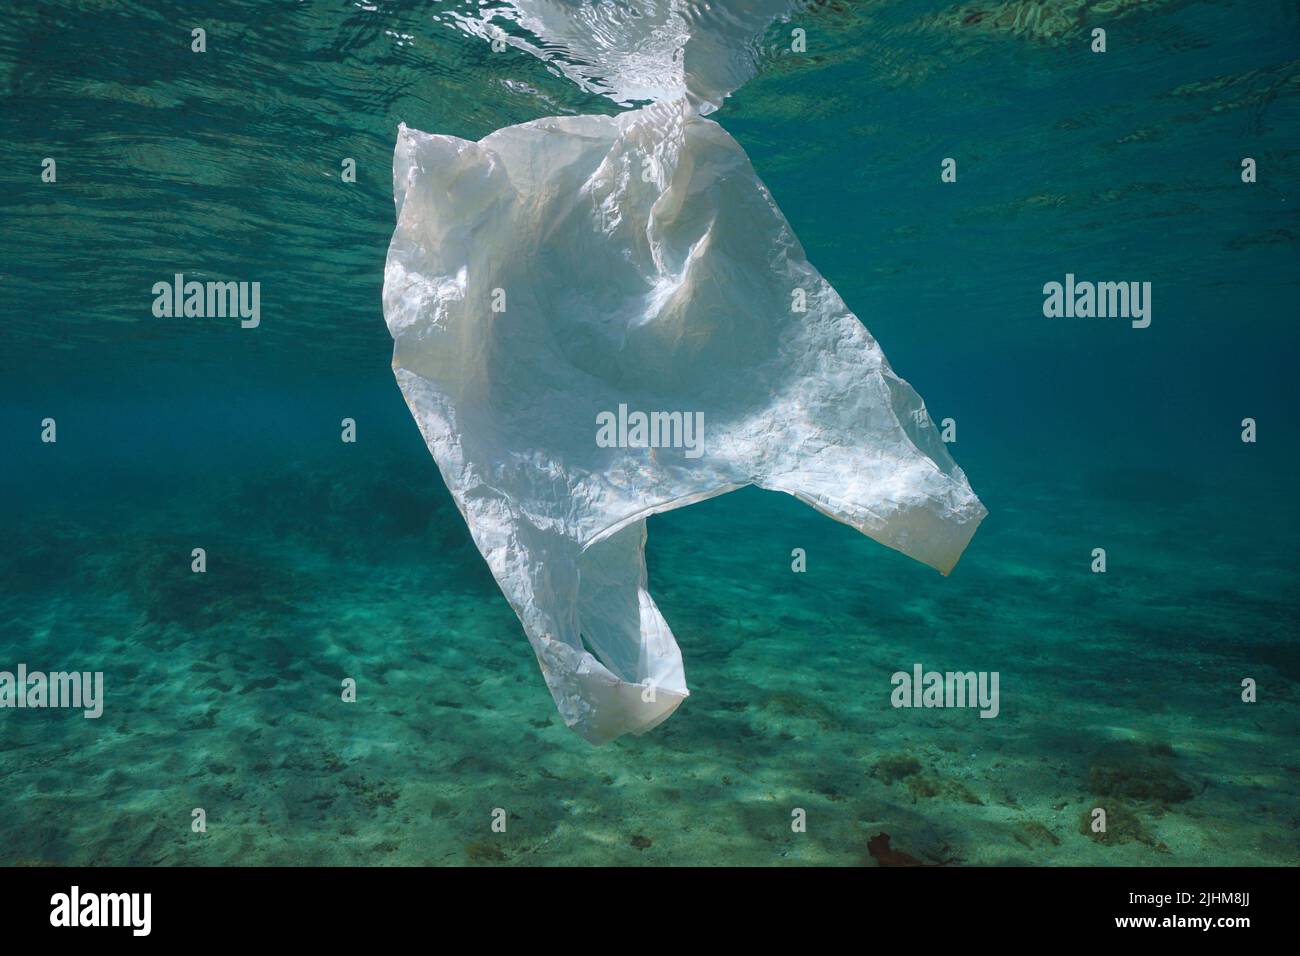 Un sacchetto bianco di plastica subacquea, inquinamento di rifiuti di plastica negli oceani Foto Stock